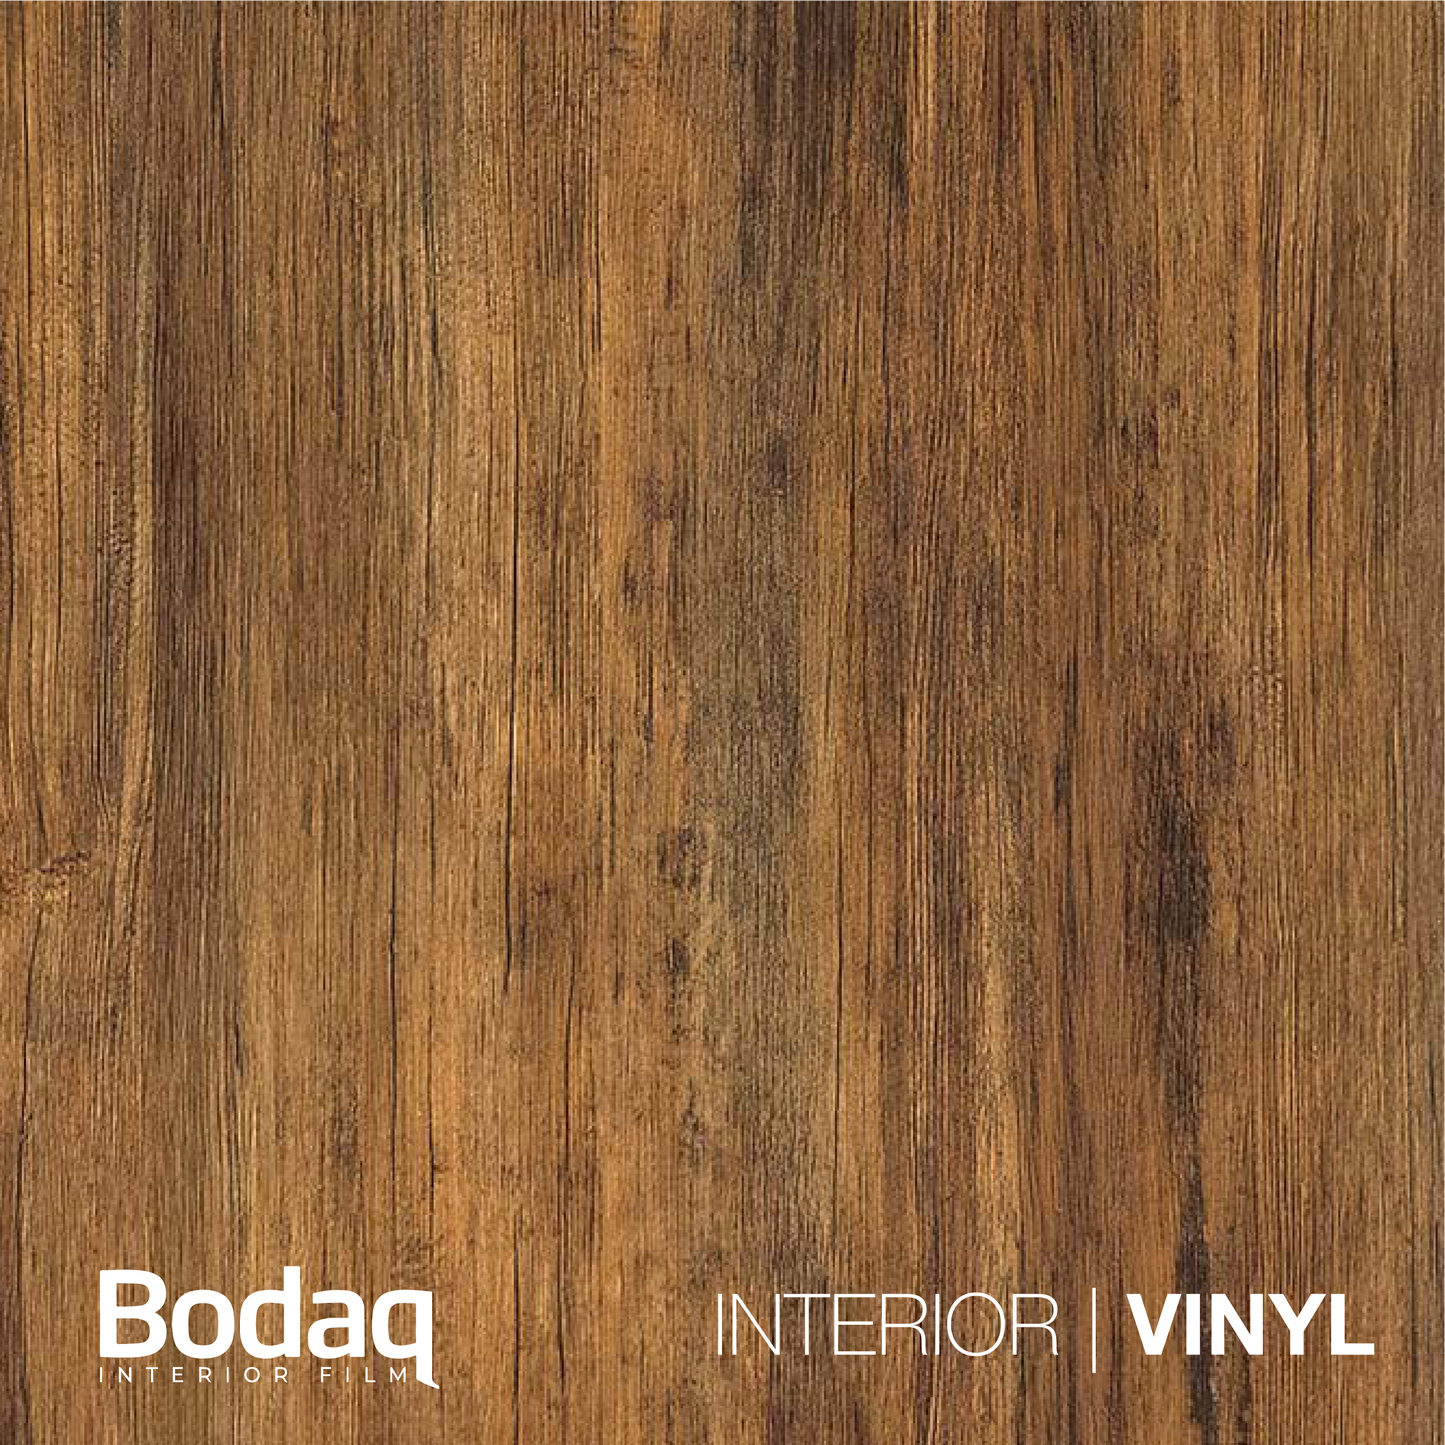 BODAQ Interior Film W274 Standard Wood - A5 Sample